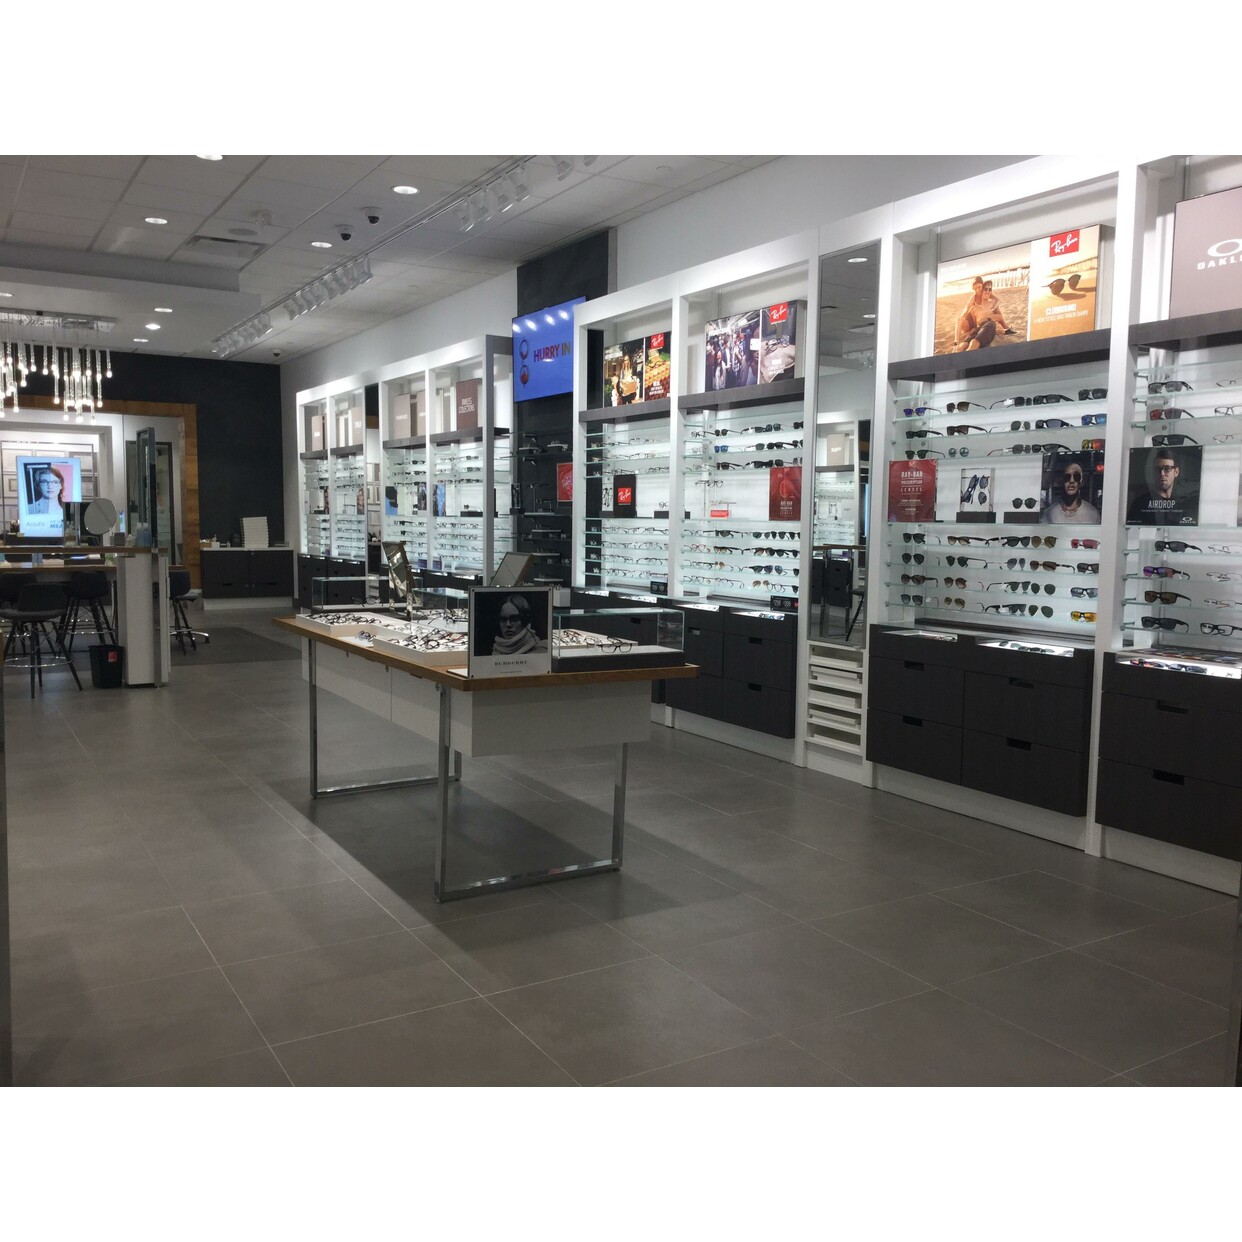 THE BEST 10 Eyewear & Opticians in LOUISVILLE, KY - Last